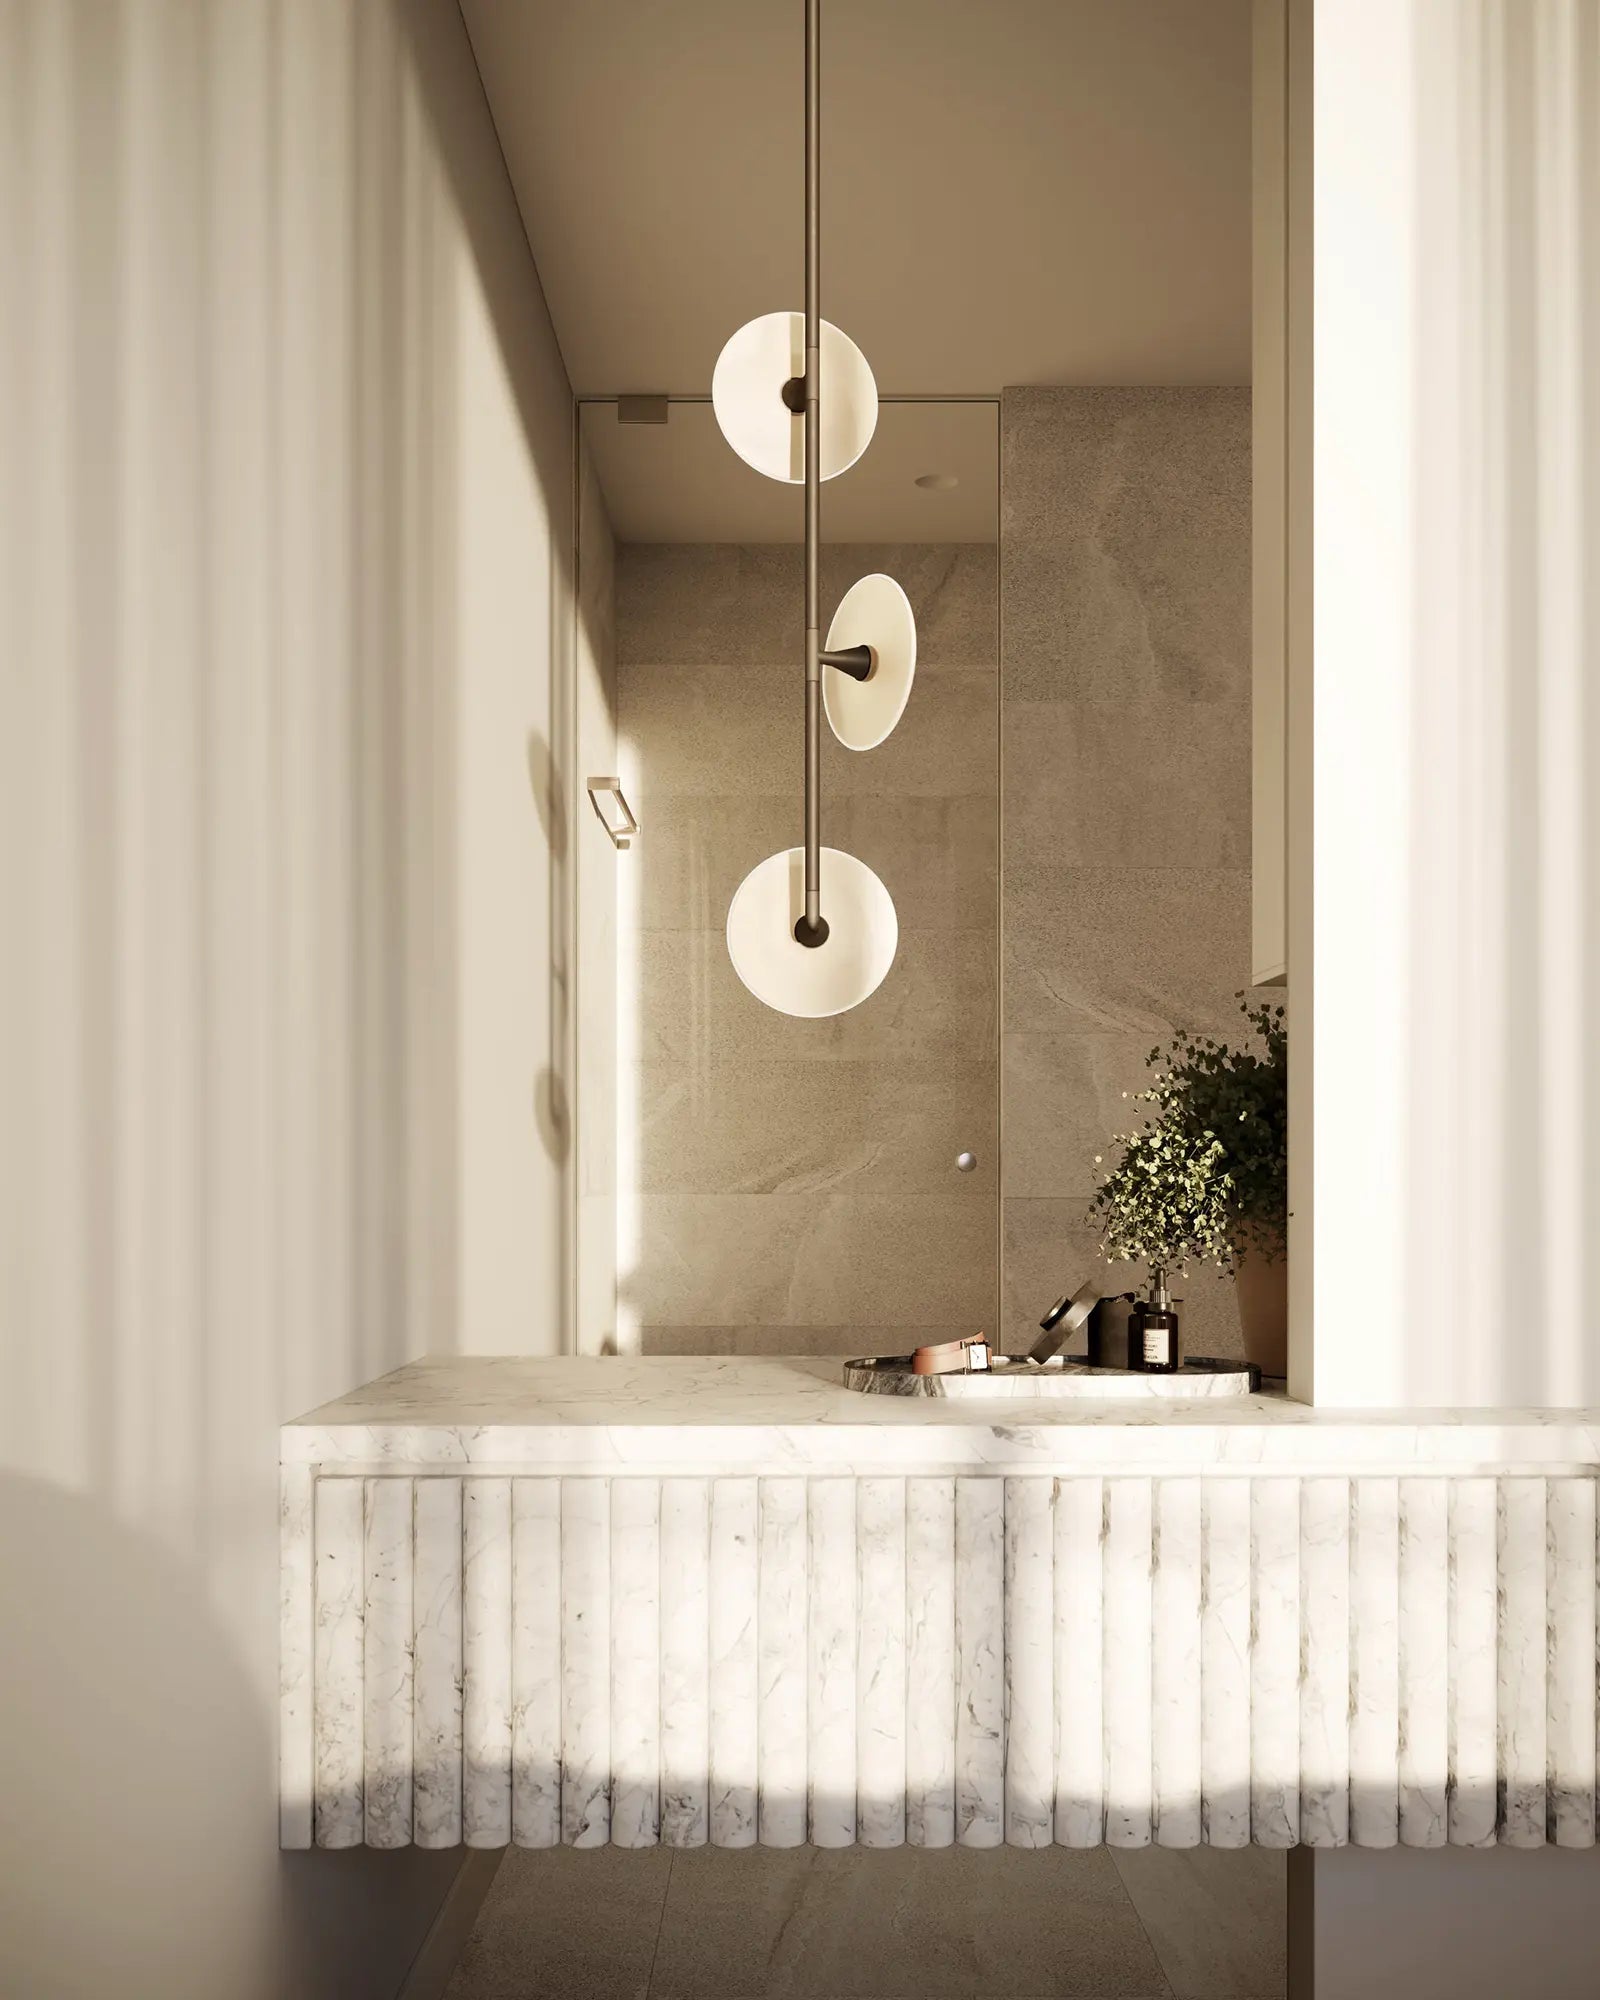 Coral Trio Pendant Light in a bathroom